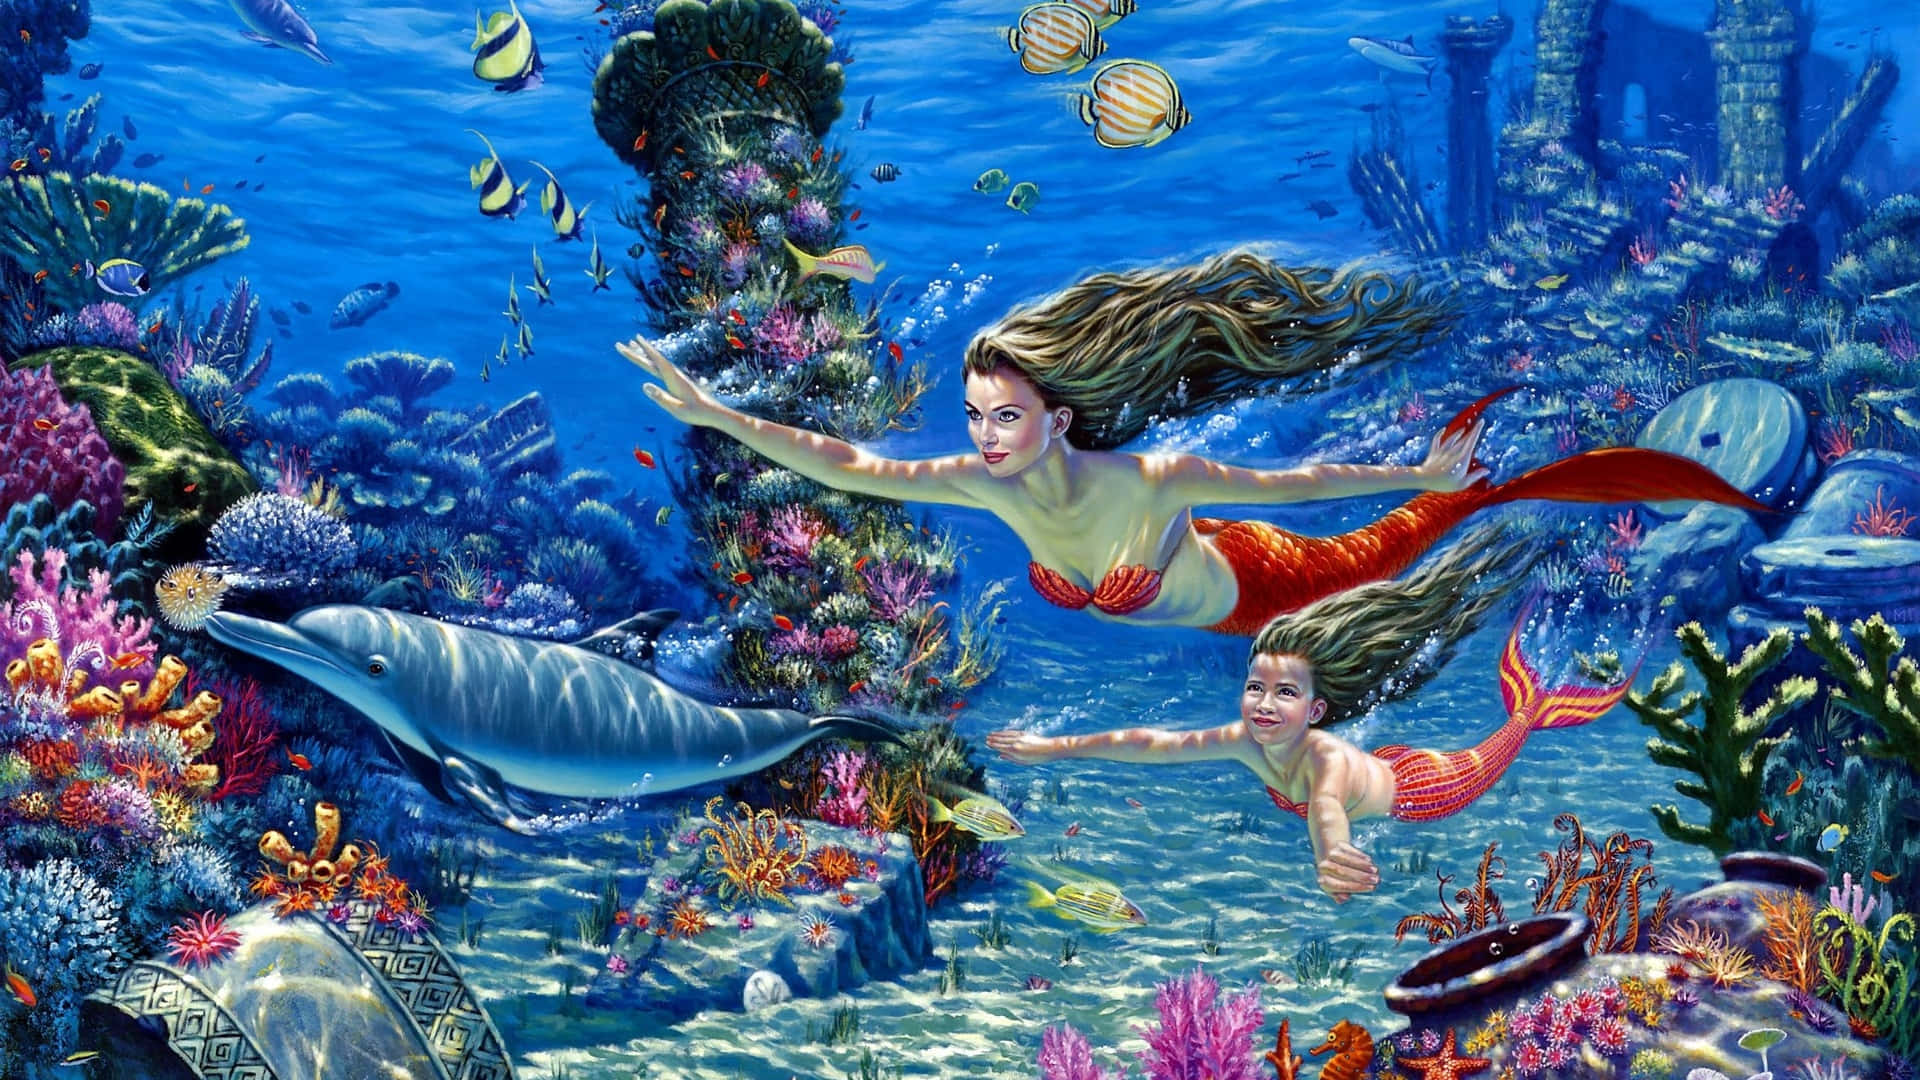 A Mermaid Swimming on the Ocean Floor